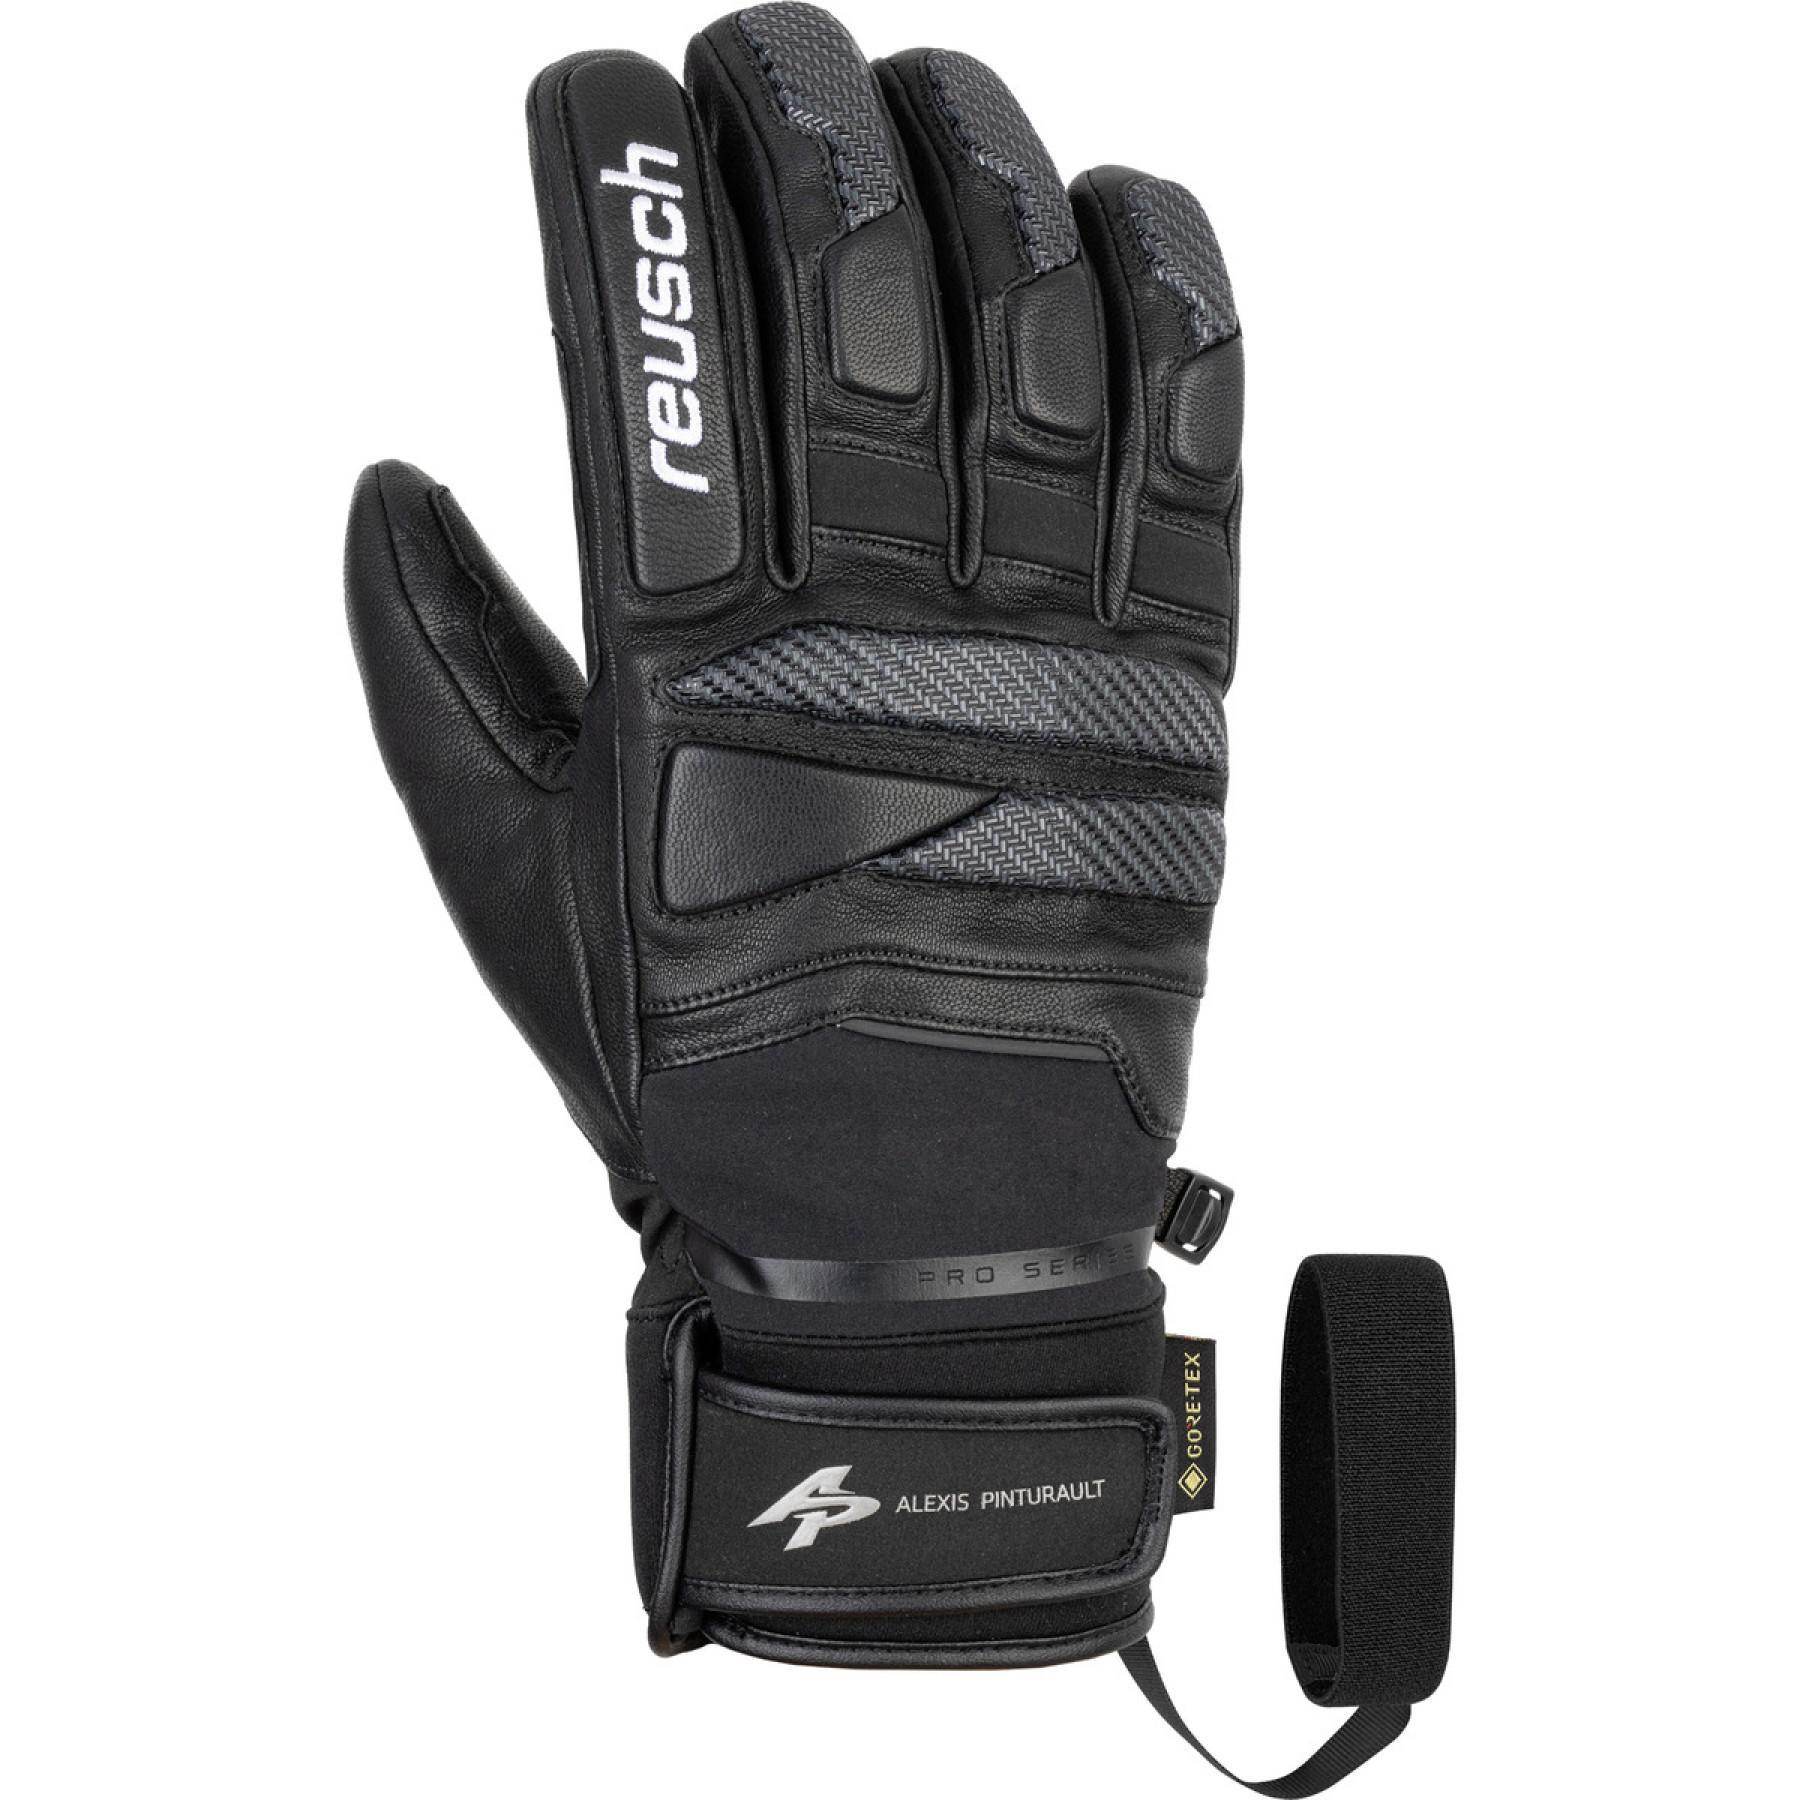 Gloves Reusch Alexis Pinturault Gtx + Gore Grip Technology